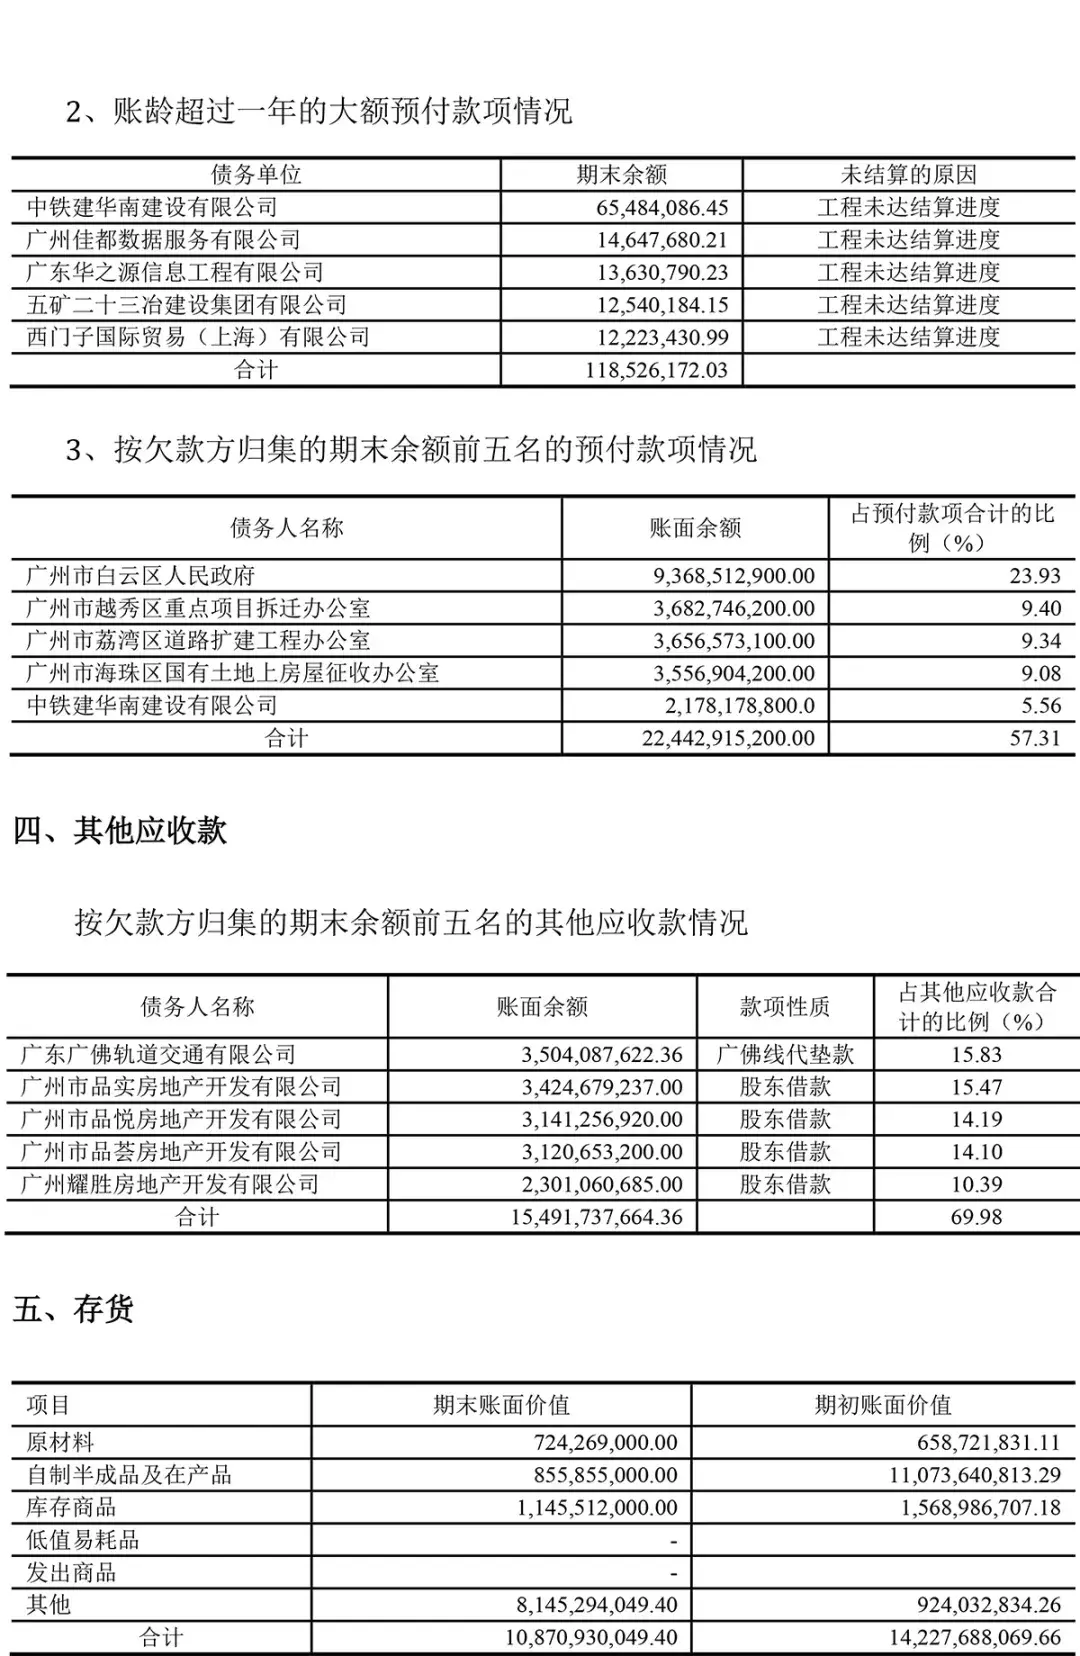 (广州地铁集团有限公司)广州地铁集团有限公司2020年半年度财务报表  第11张